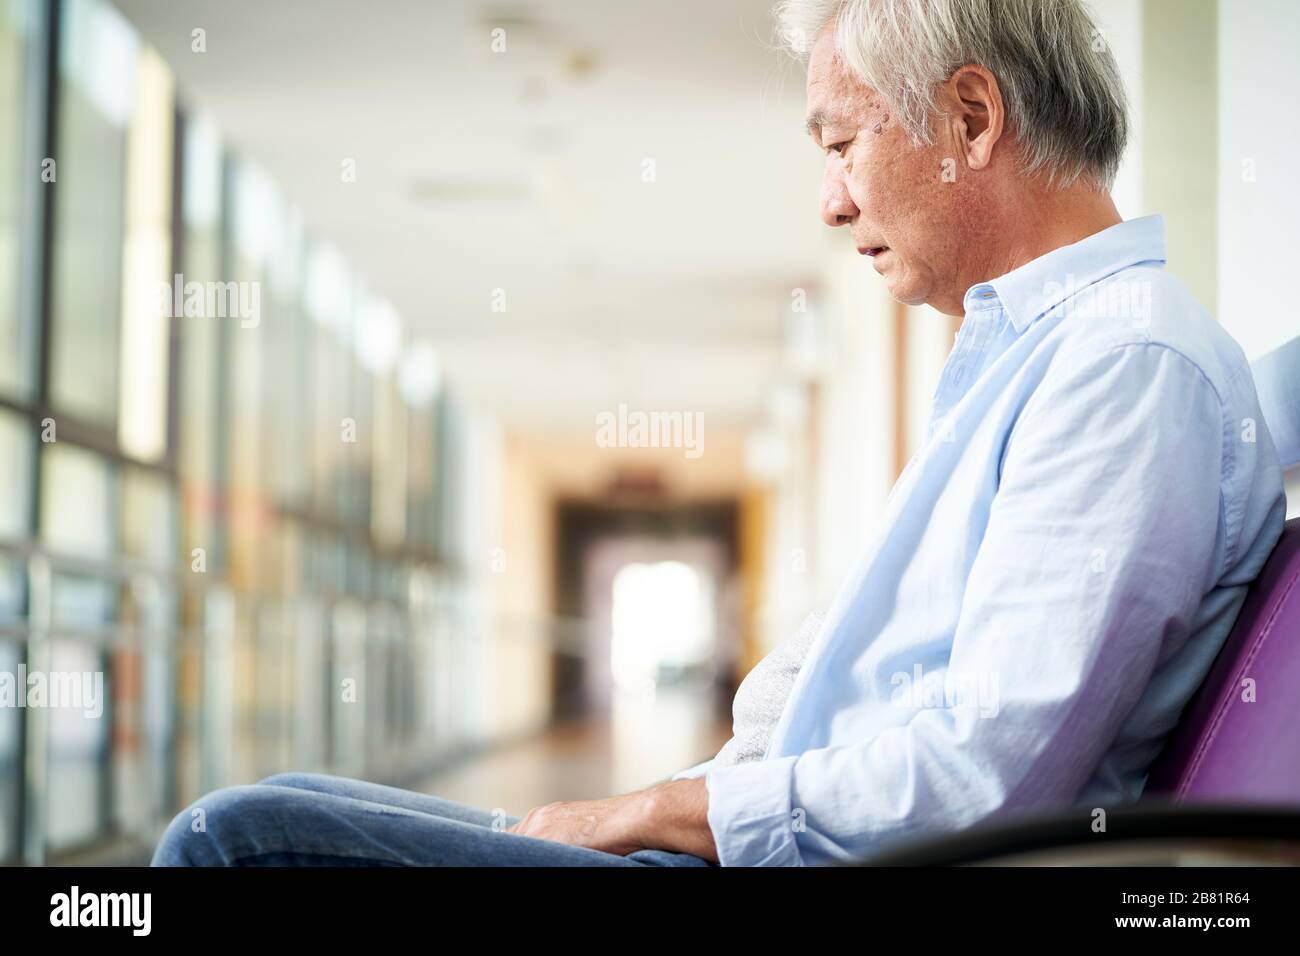 Trauriger und verwüsteter asiatischer Obermann, der allein im leeren Krankenhausflur sitzt, geht nach unten Stockfoto